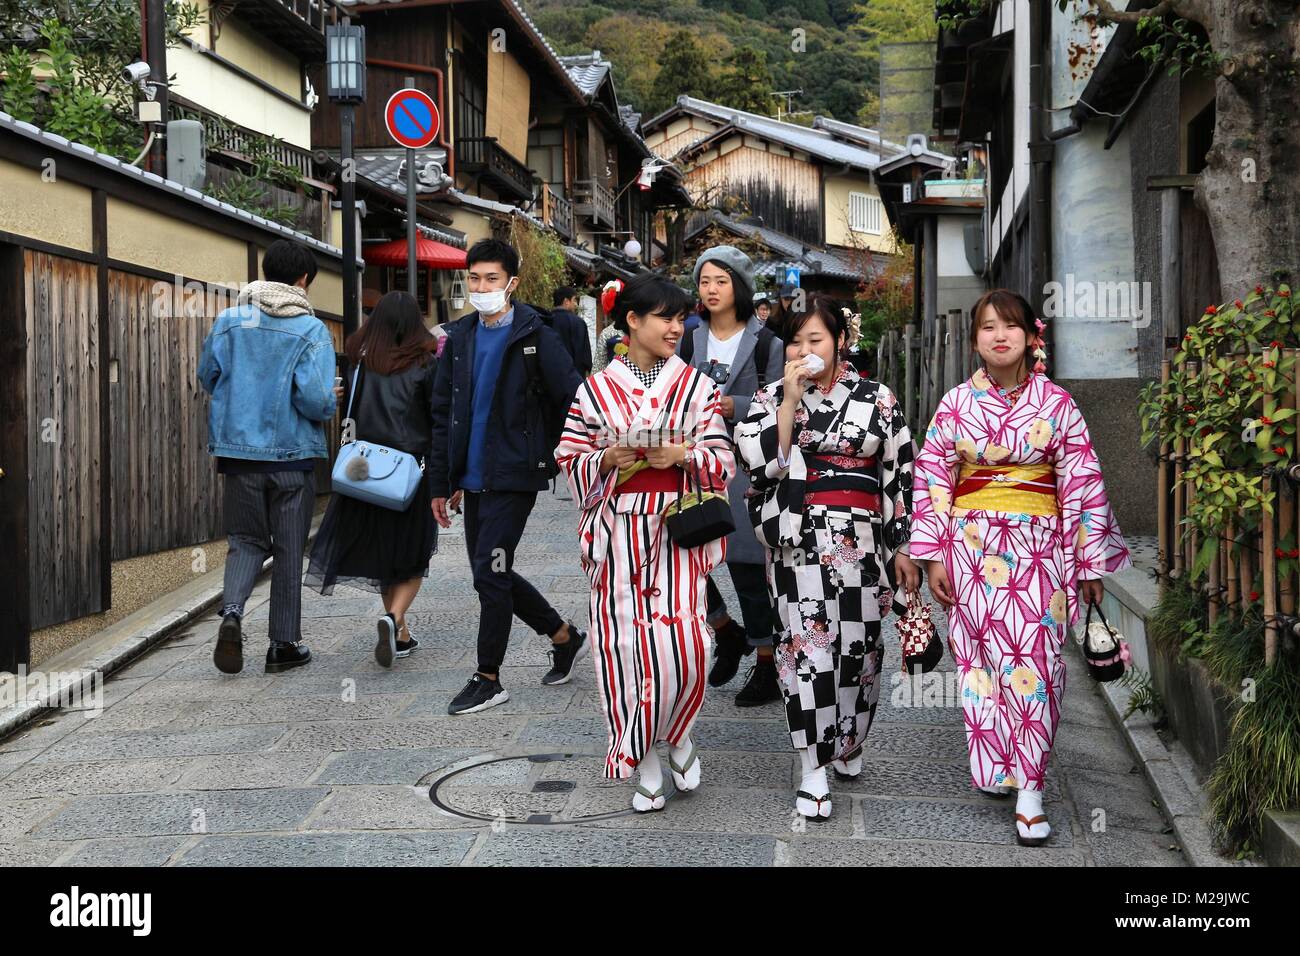 KYOTO, Giappone - 26 novembre 2016: la gente visita Higashiyama città vecchia a Kyoto, in Giappone. Kyoto ha 17 i siti del Patrimonio Mondiale dell'UNESCO. Foto Stock